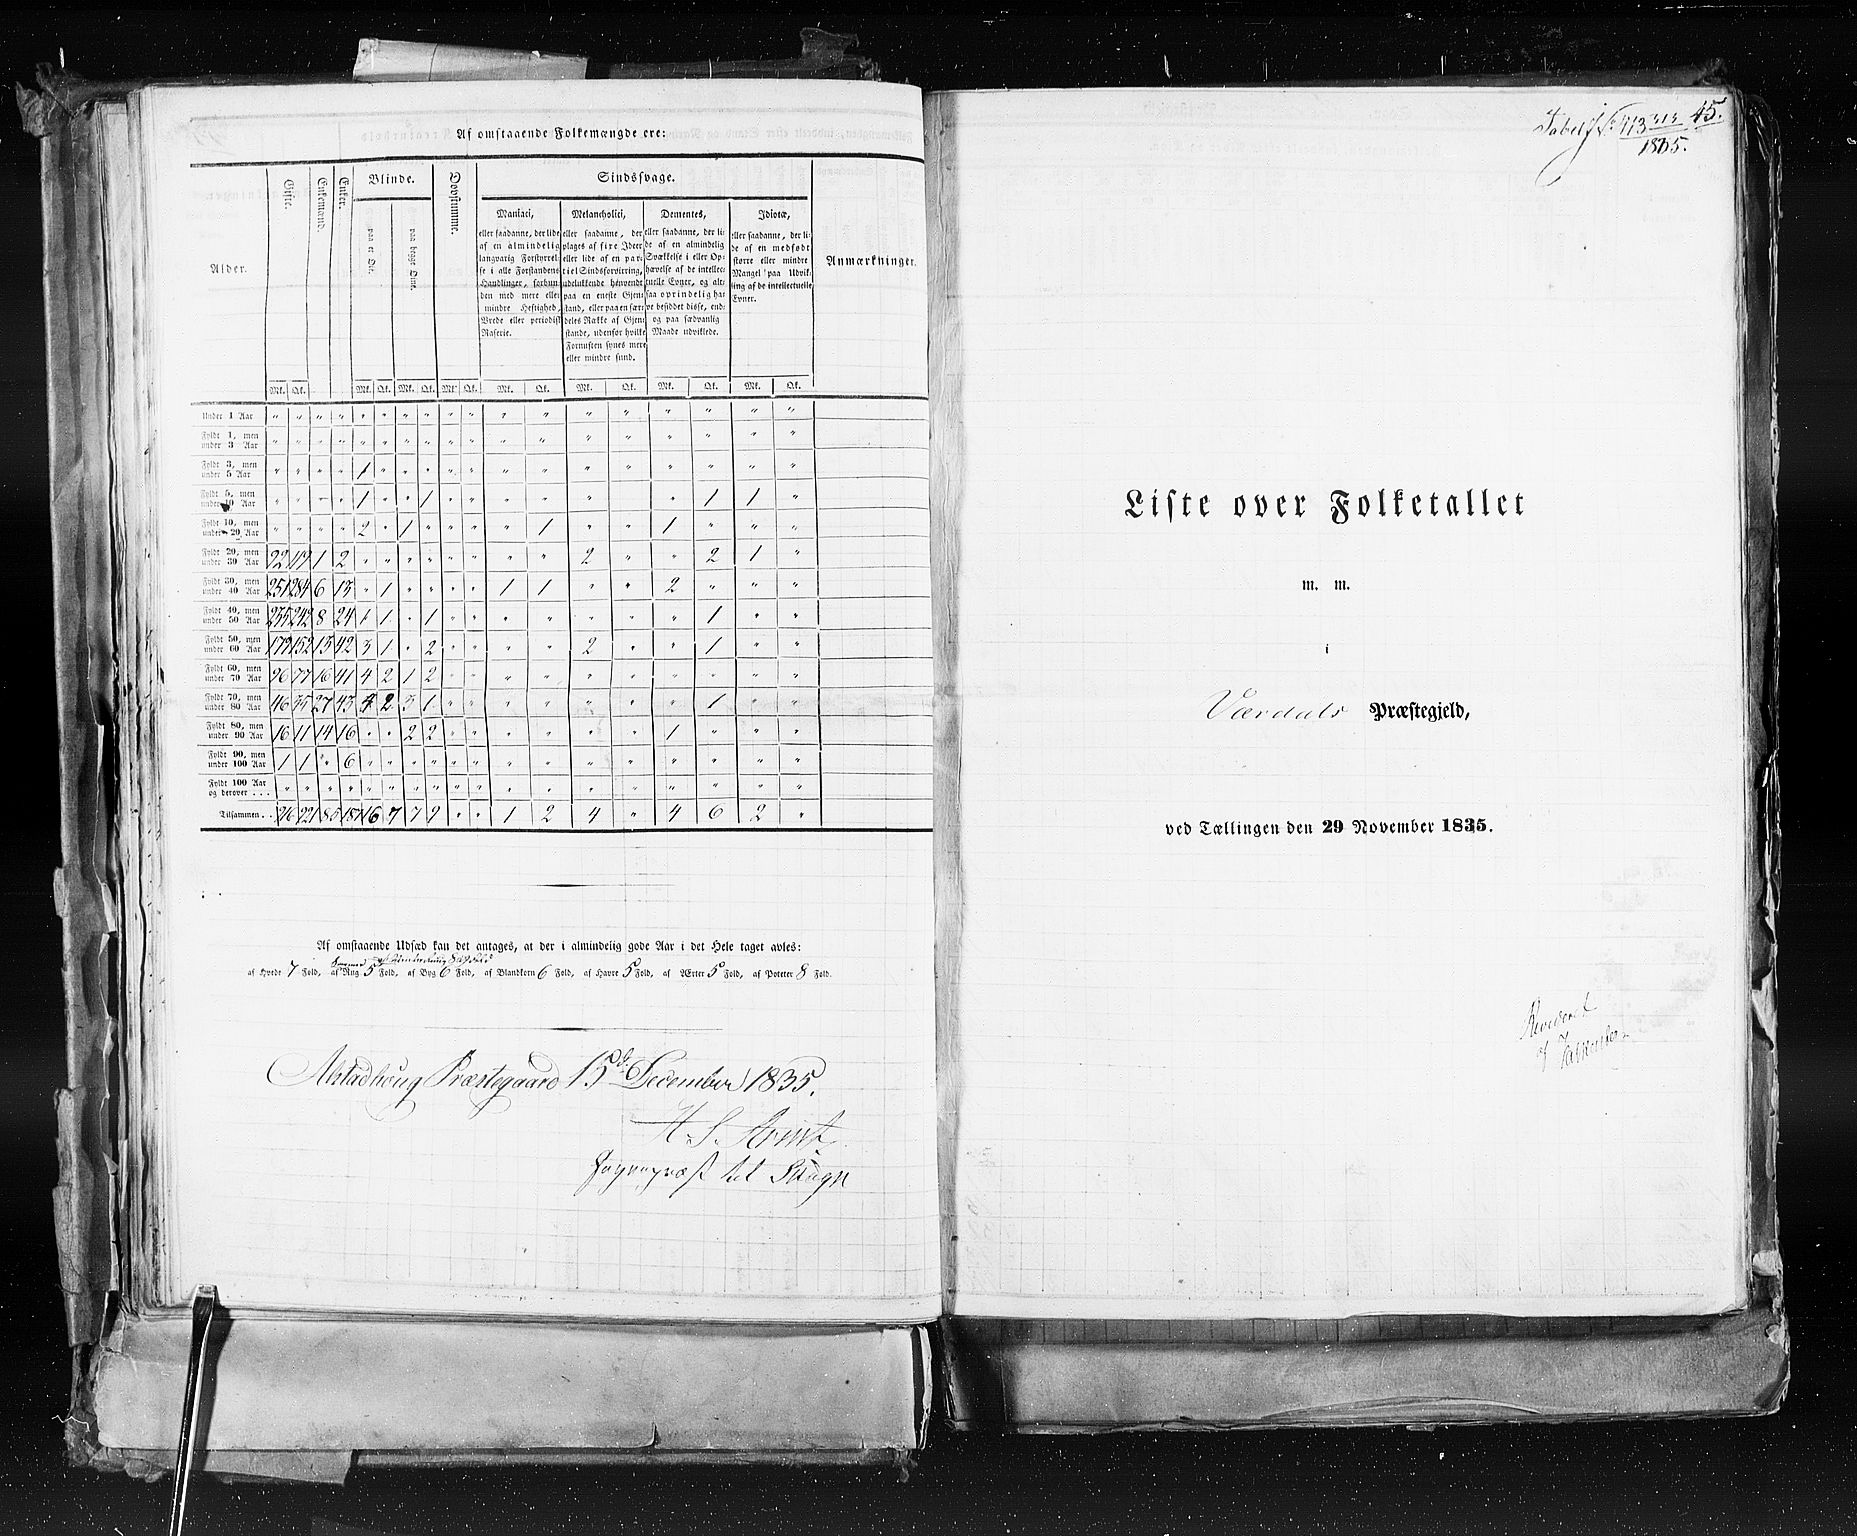 RA, Folketellingen 1835, bind 9: Nordre Trondhjem amt, Nordland amt og Finnmarken amt, 1835, s. 45